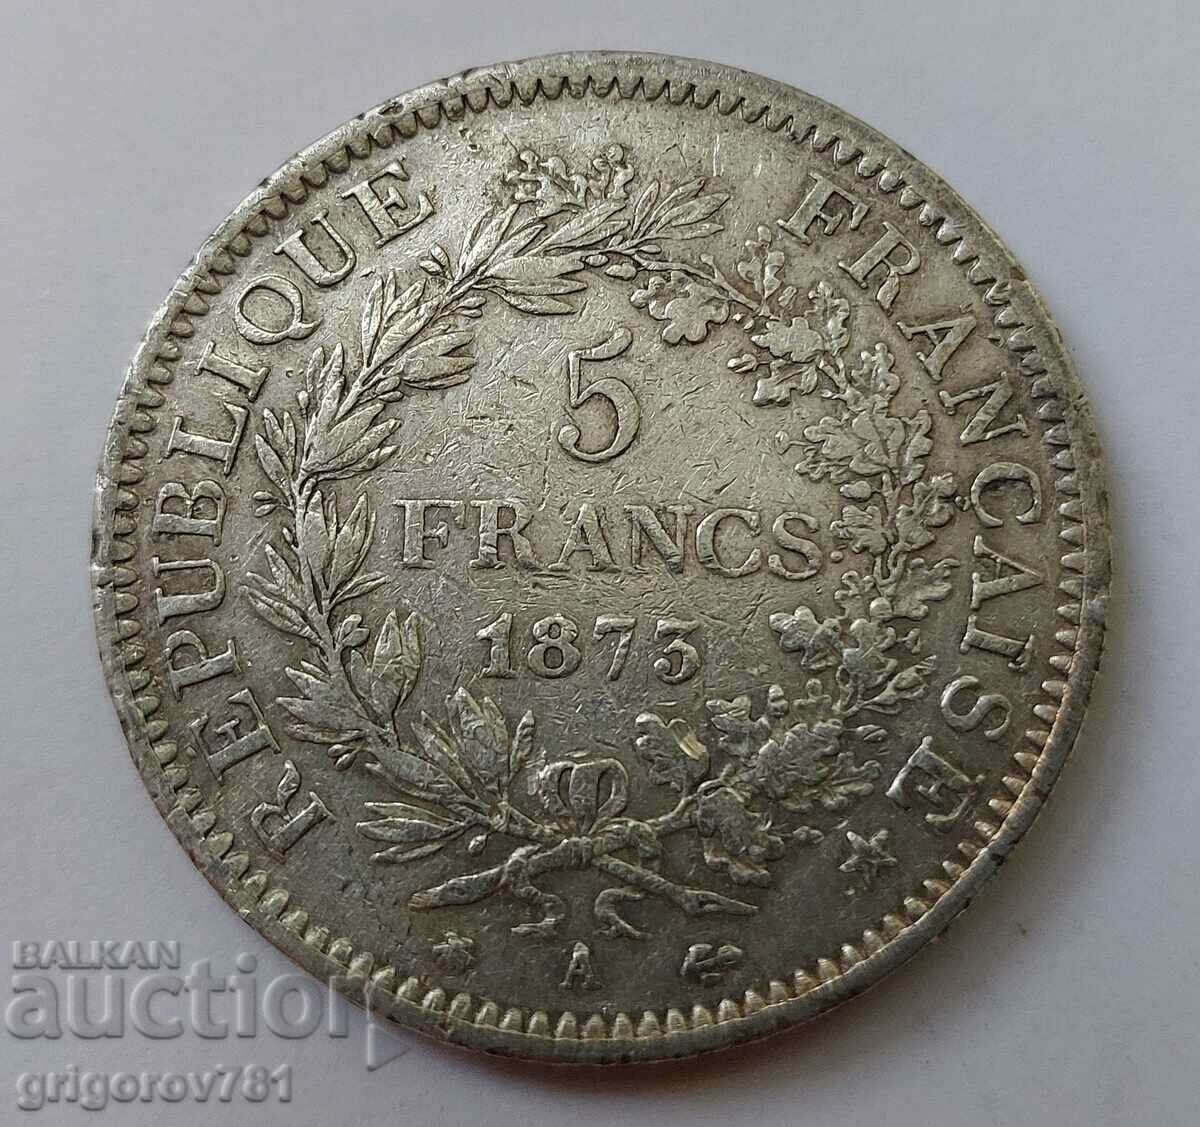 Ασημένιο 5 φράγκα Γαλλία 1873 Α - ασημένιο νόμισμα # 31